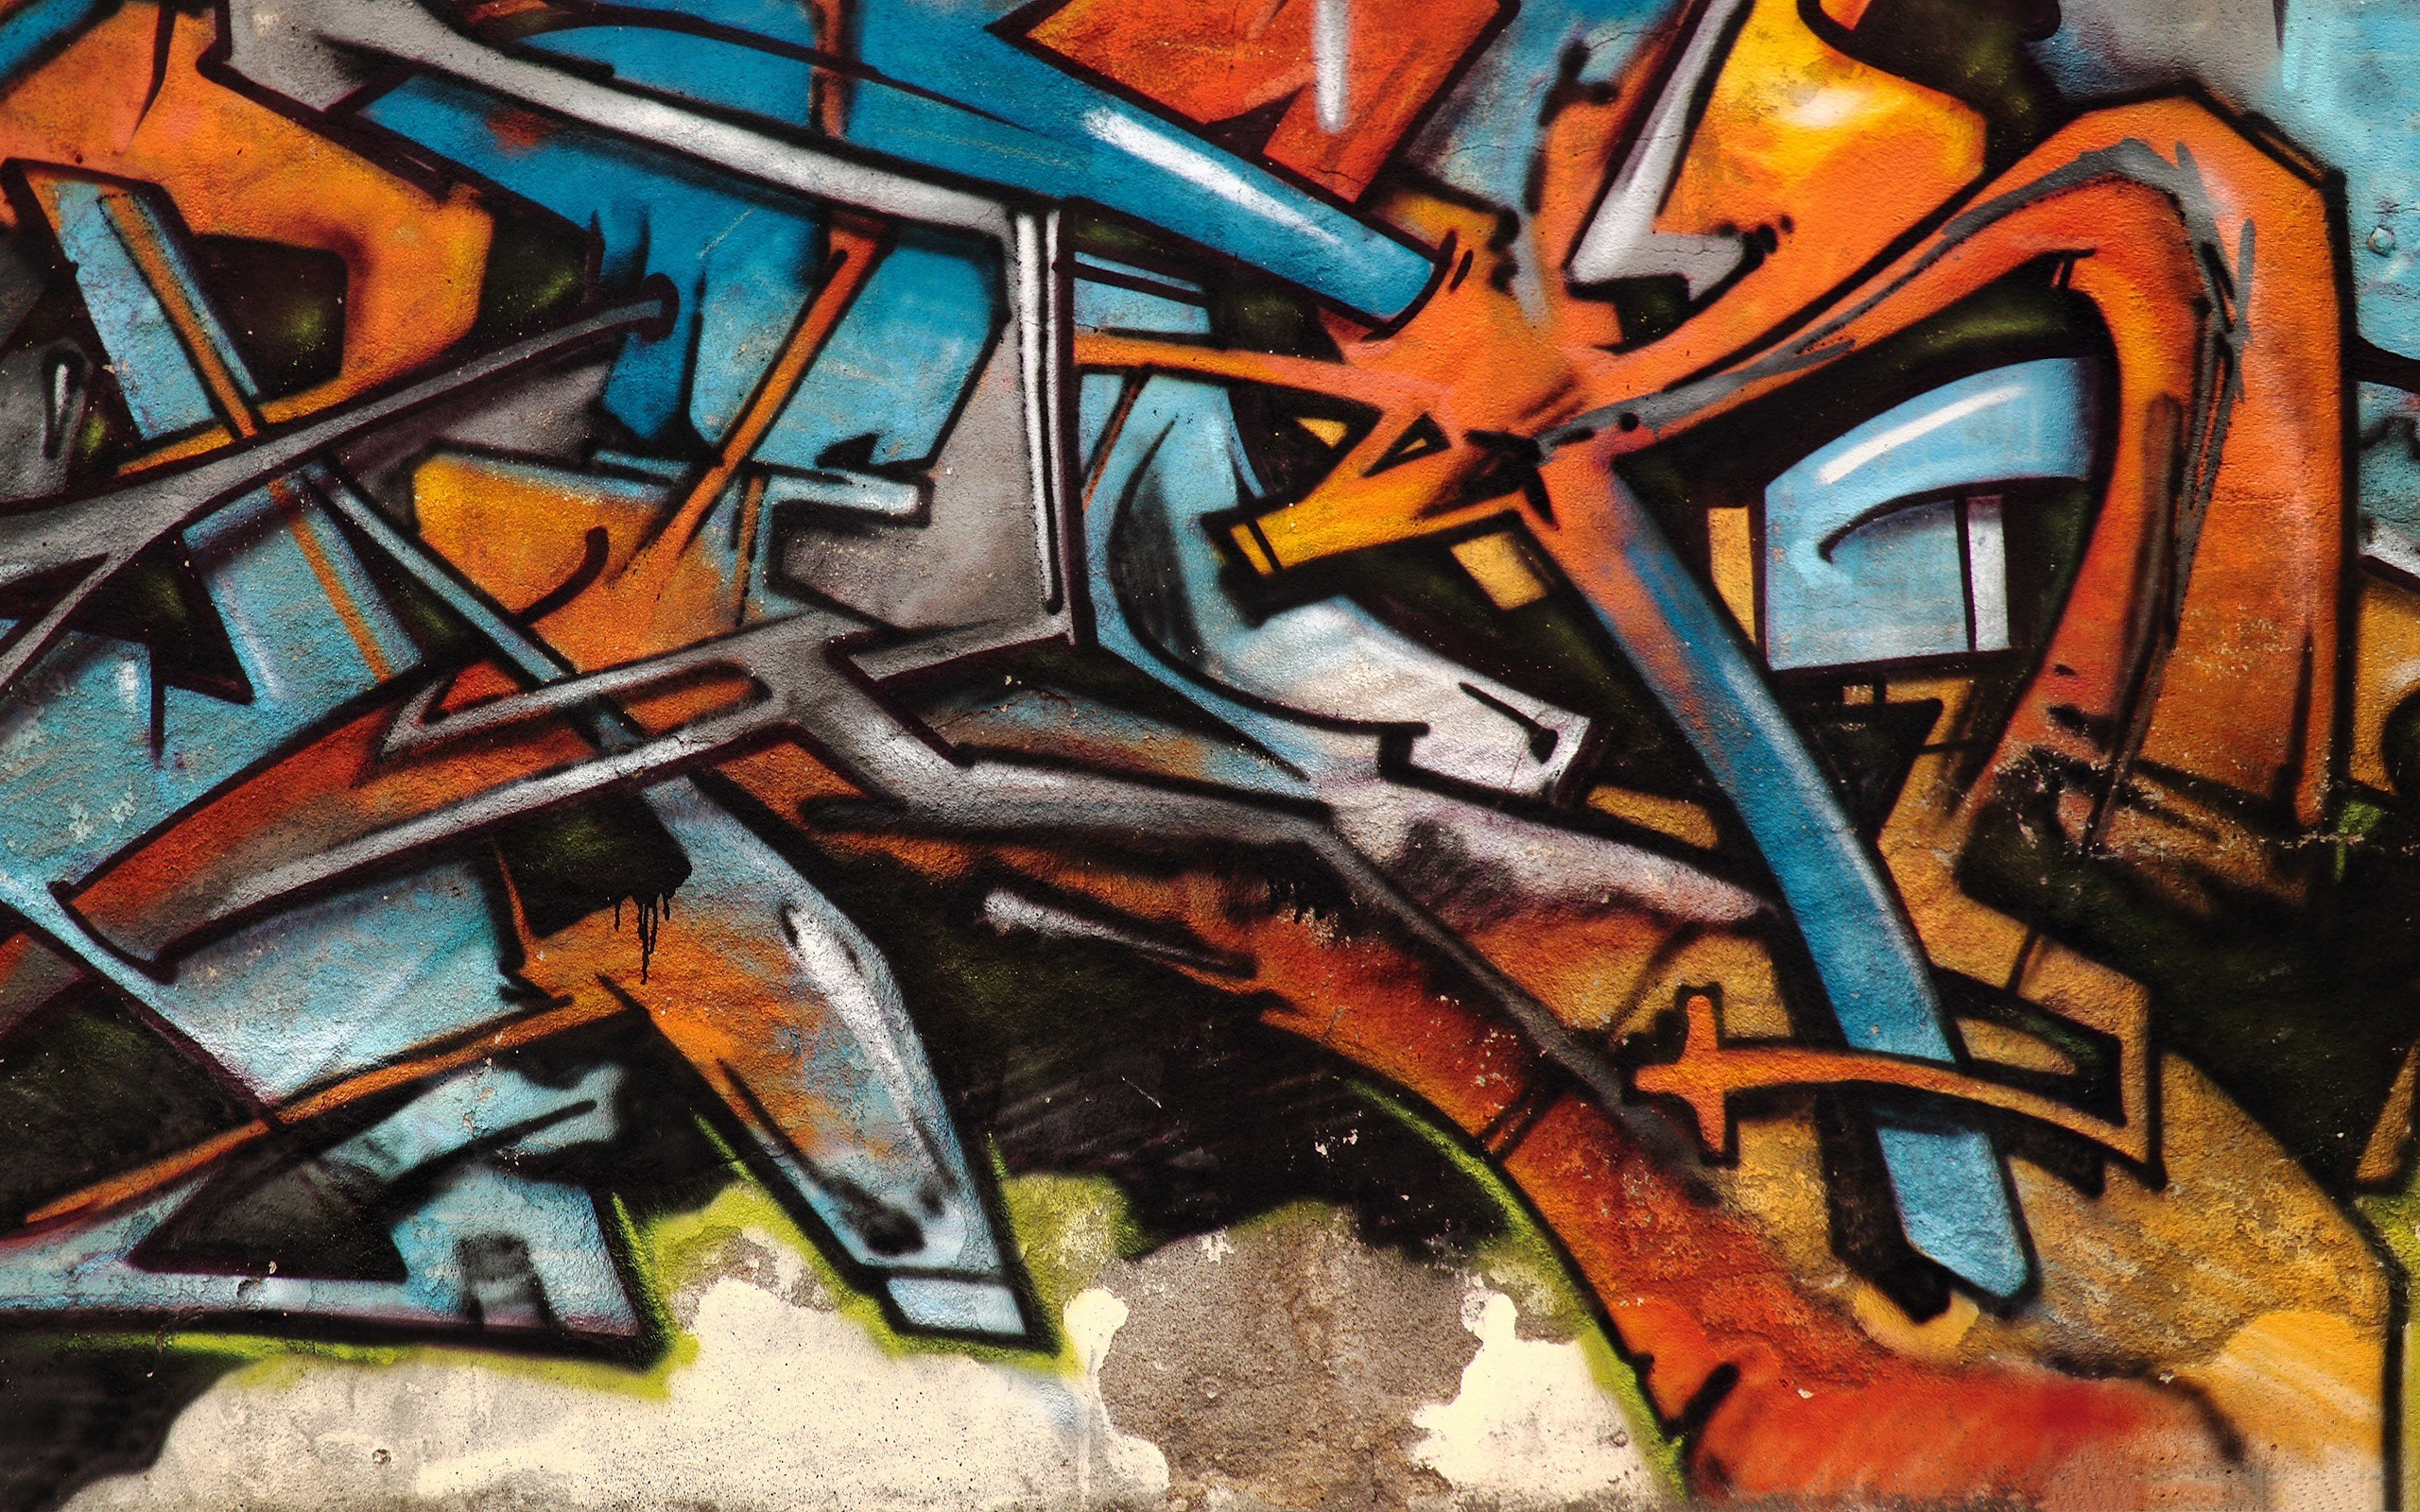 2560x1600 2304x1536 Graffiti Wallpapers | awesome | Pinterest | Graffiti, Wallpapers .